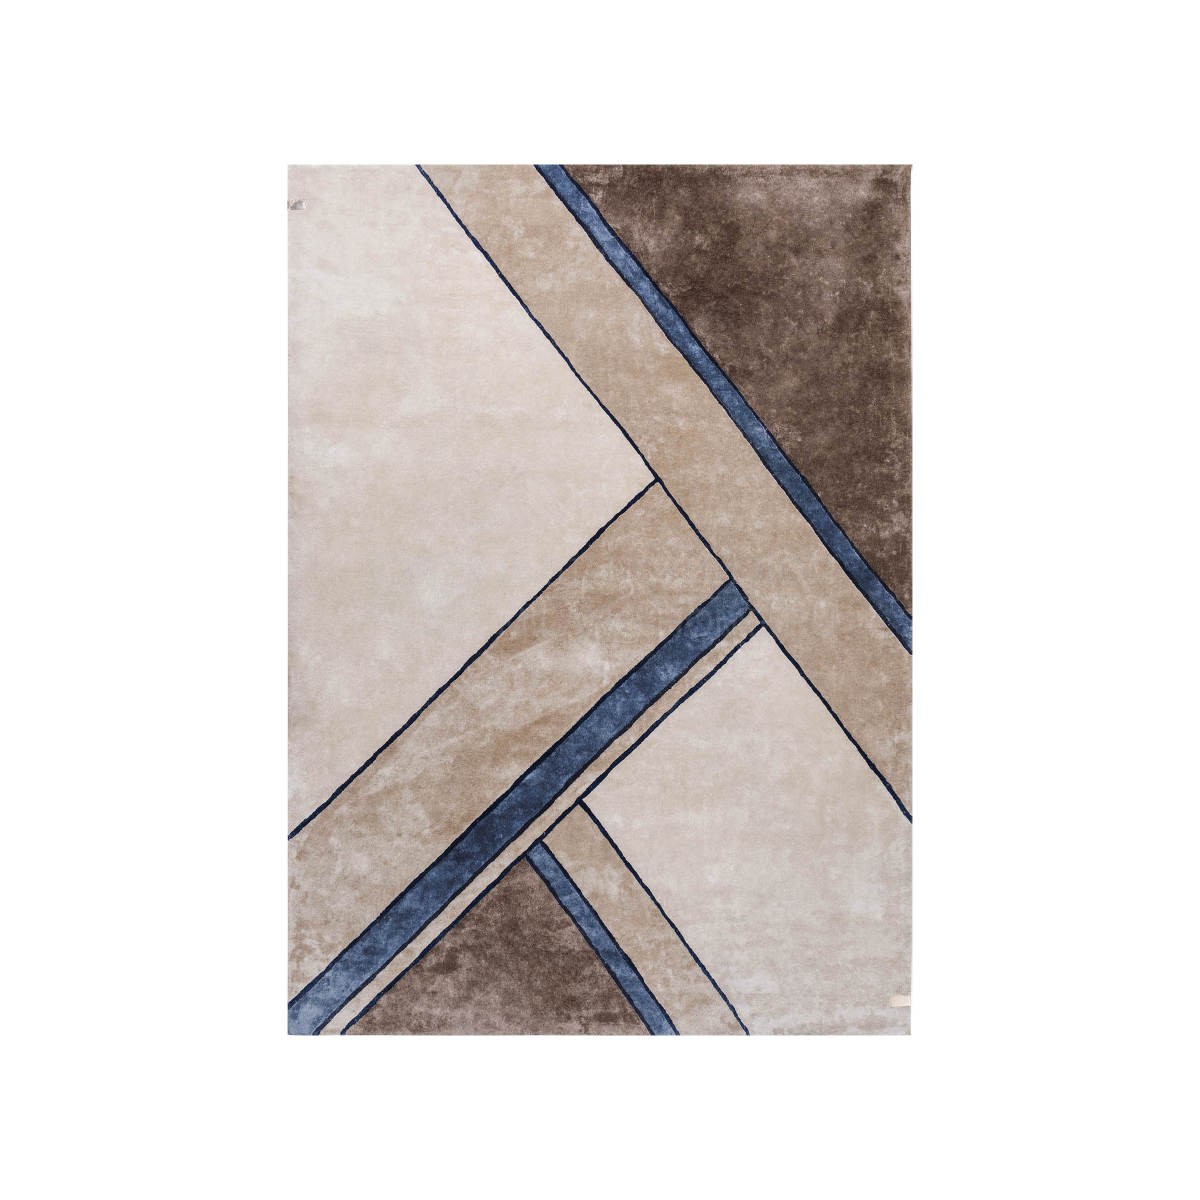 Ковер Madison blue striped carpet из Италии фабрики TURRI